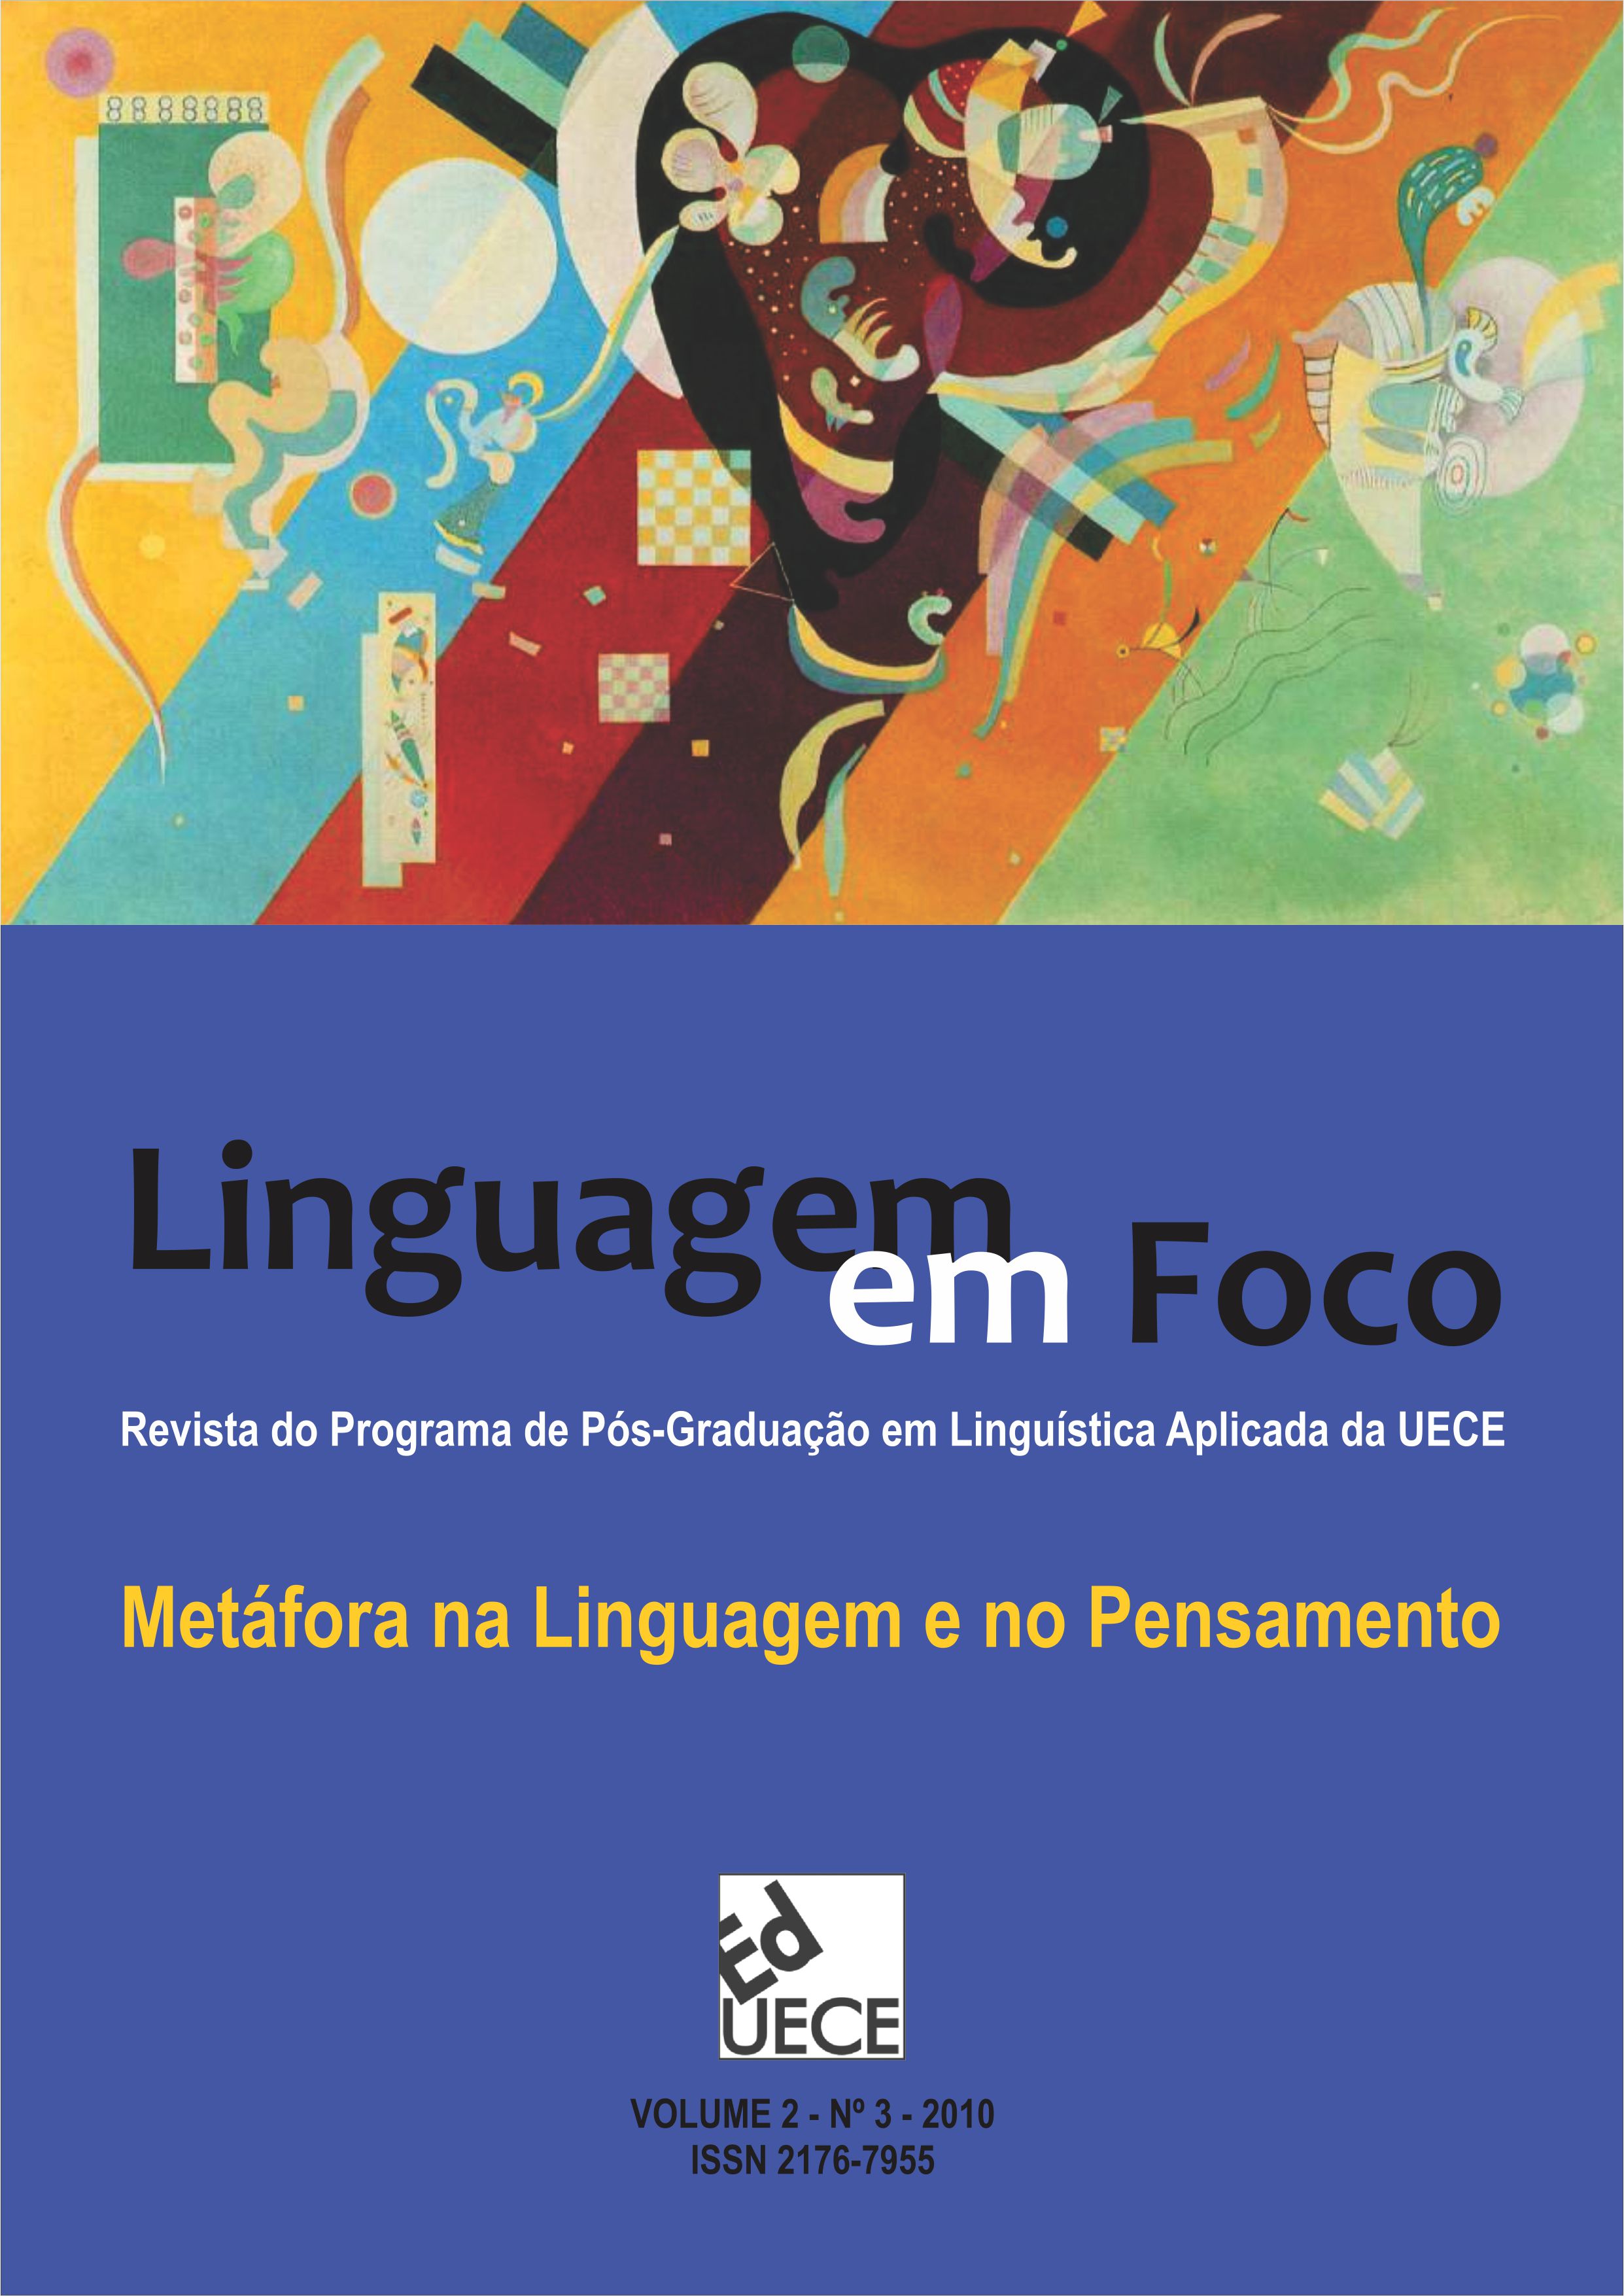 					Visualizar v. 2 n. 3 (2010): Linguagem em Foco - Volume Temático: Metáfora na Linguagem e no Pensamento
				